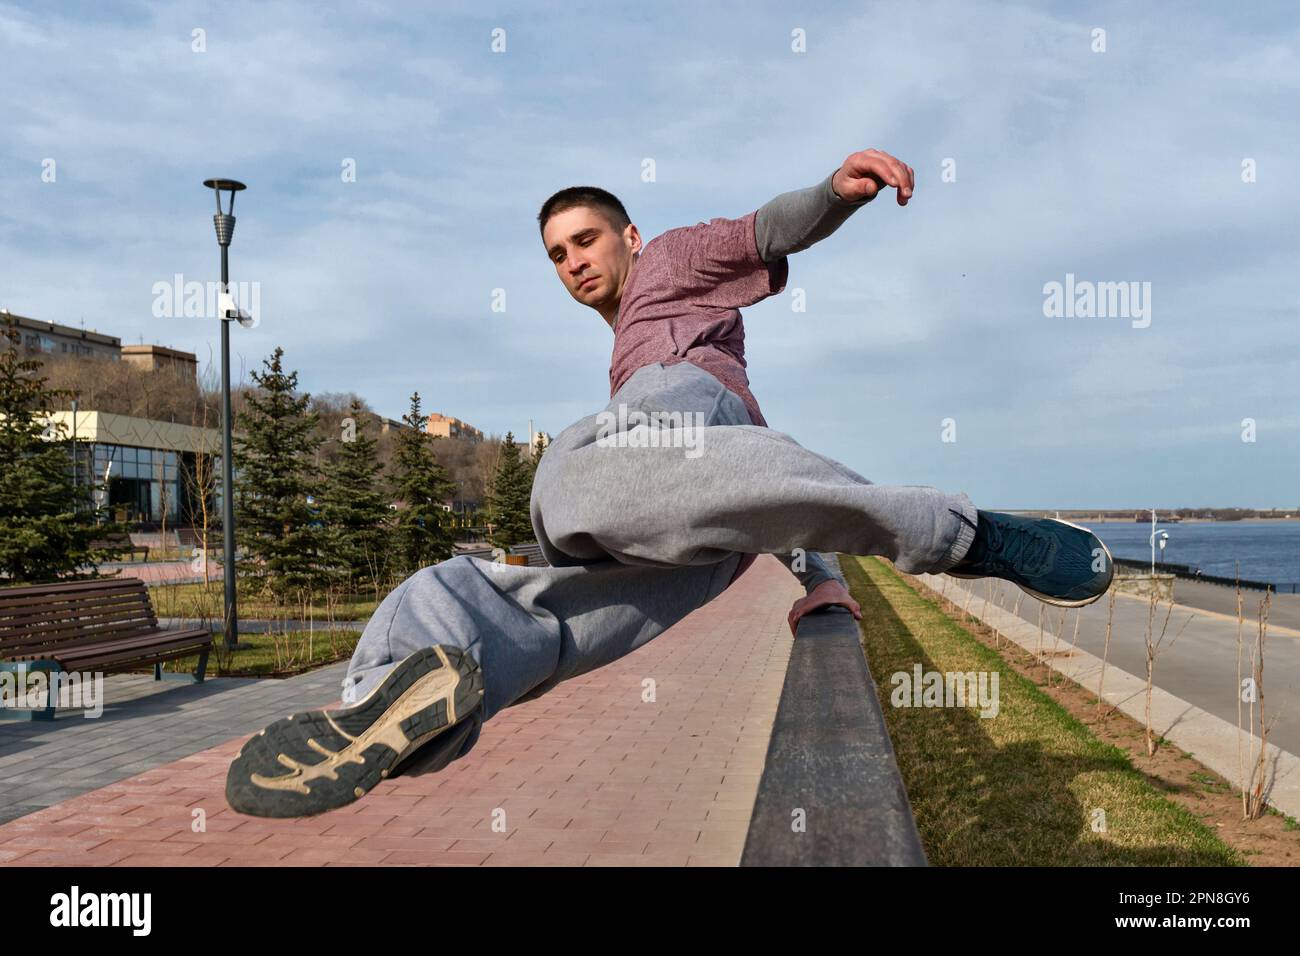 Sportler, der Parkour im städtischen Raum praktiziert. Parkour-Sportler, der über das Geländer springt. Aktiver Lifestyle. Akrobatik im Freien Stockfoto